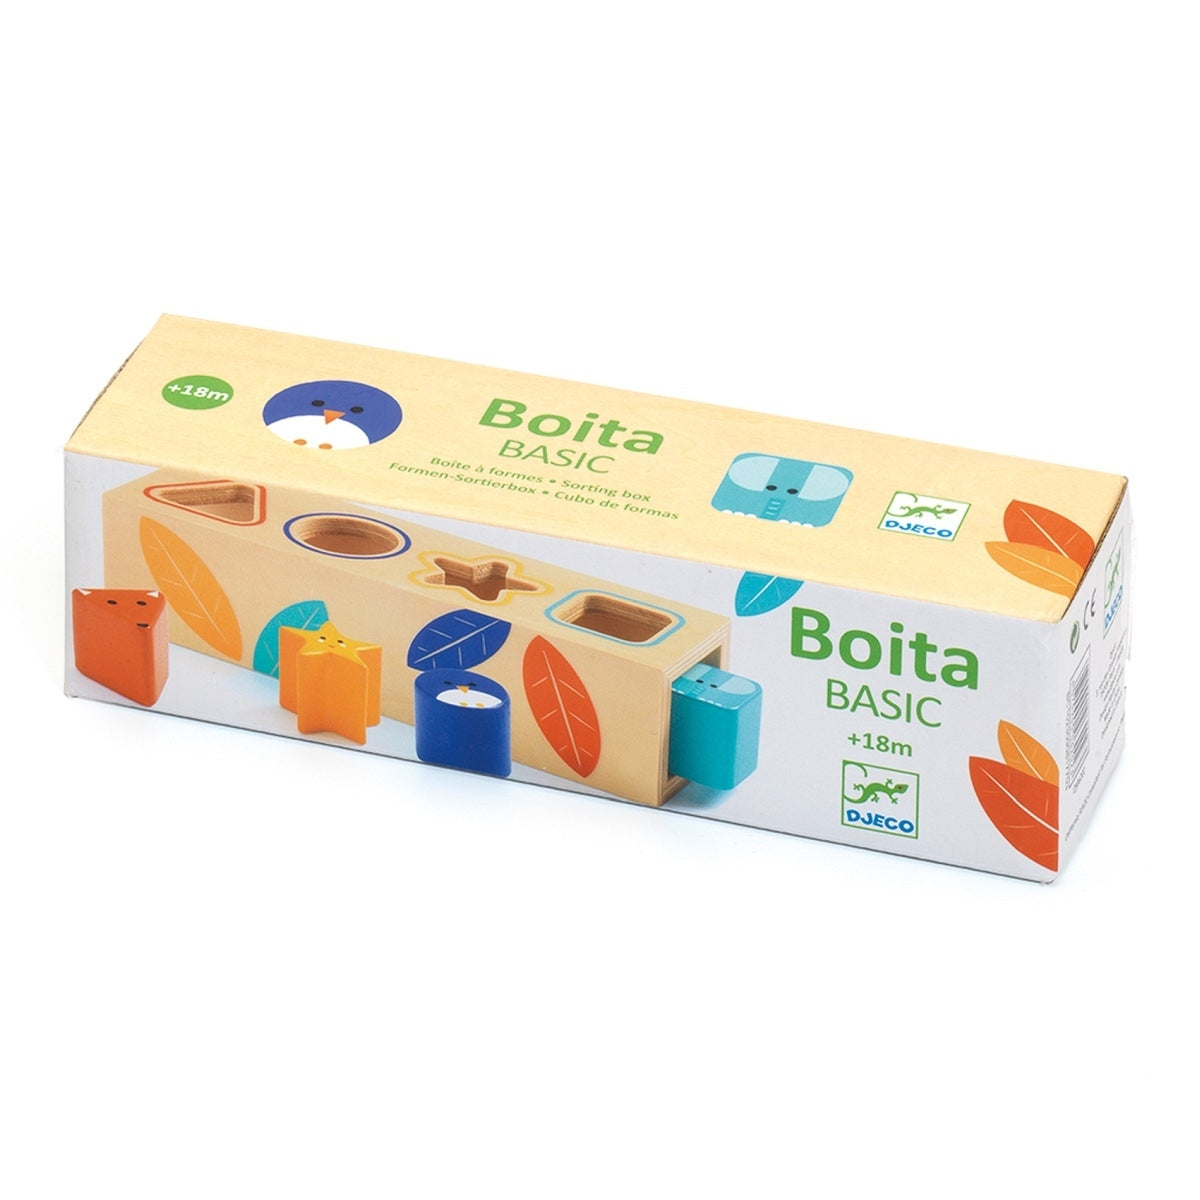 Sortierbox Boita Basic | Djeco